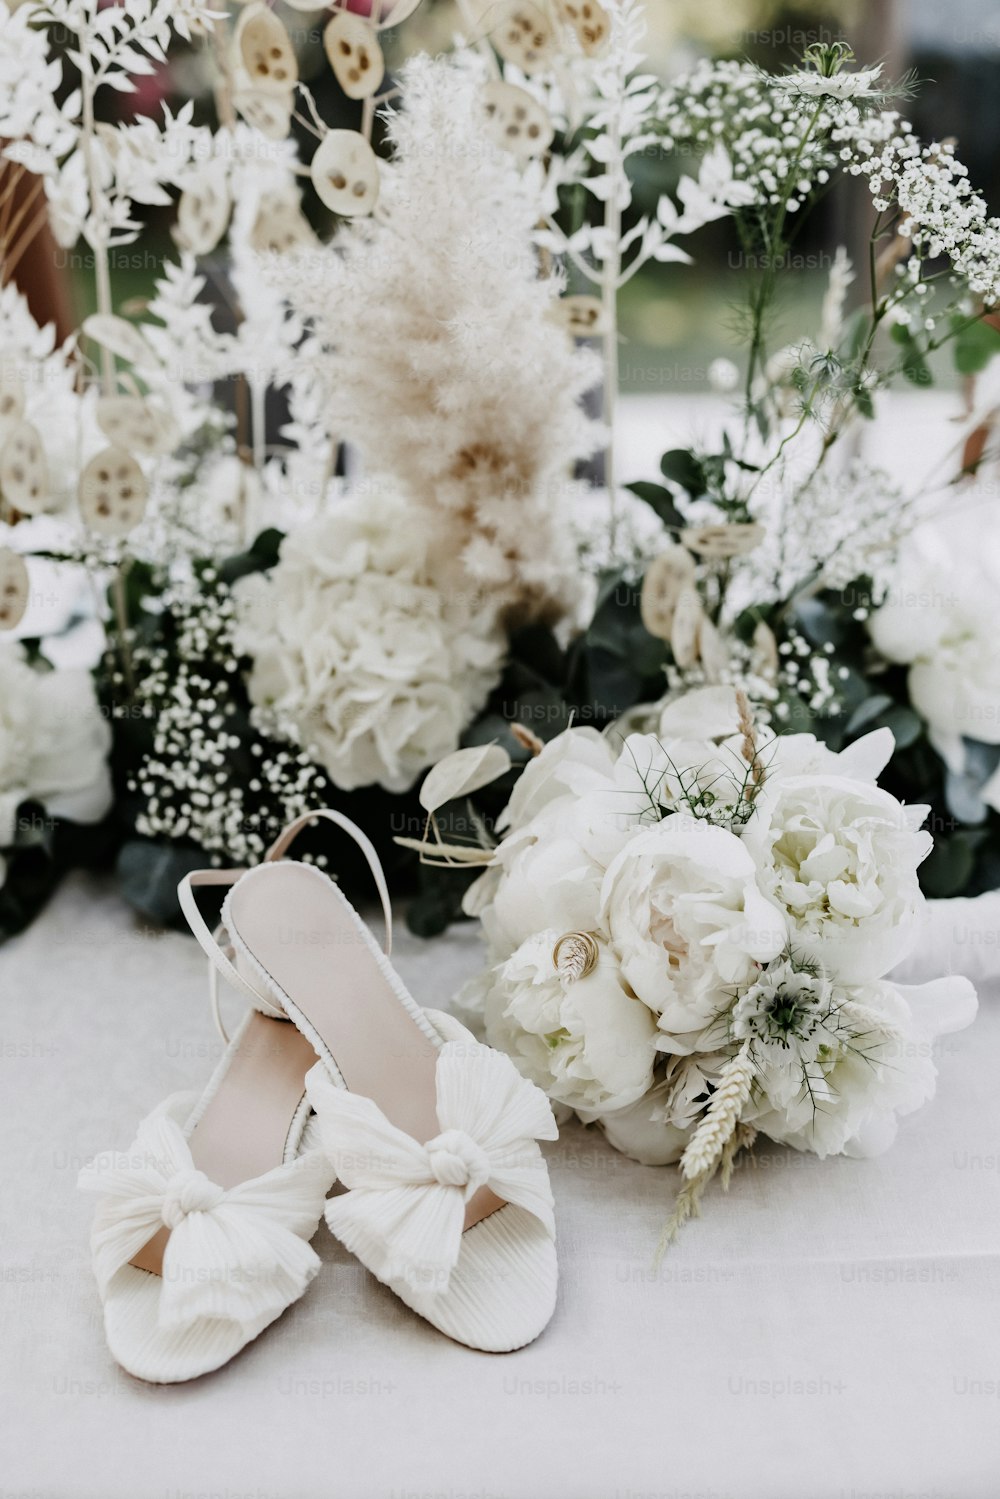 une paire de chaussures blanches assises sur une table